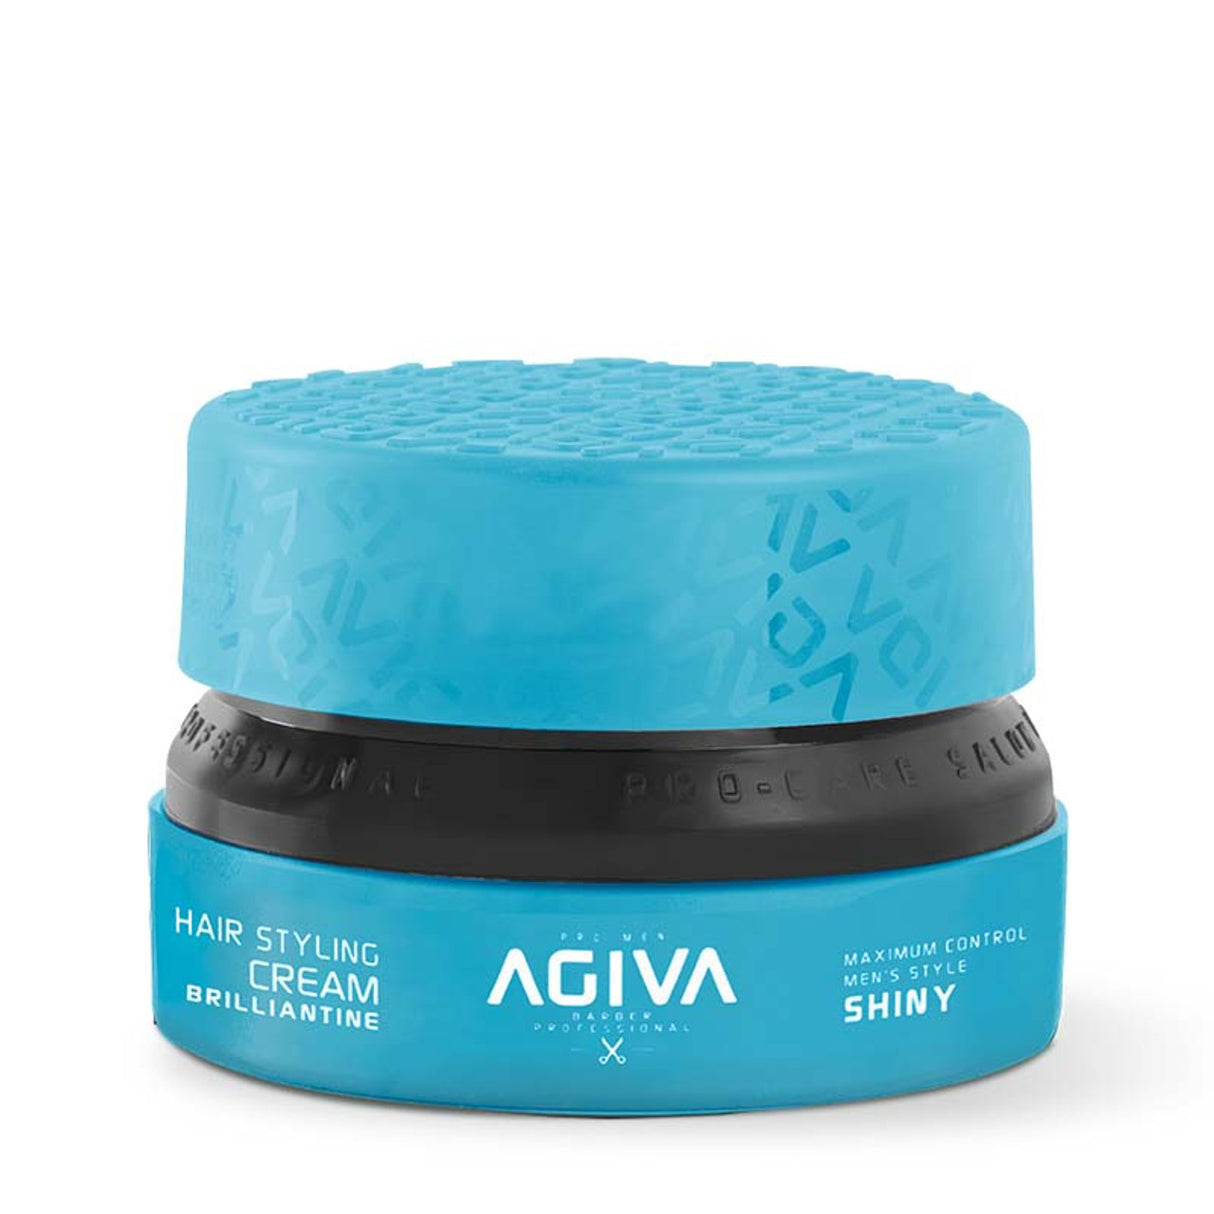 Agiva Brilliantine Cream 155 mL